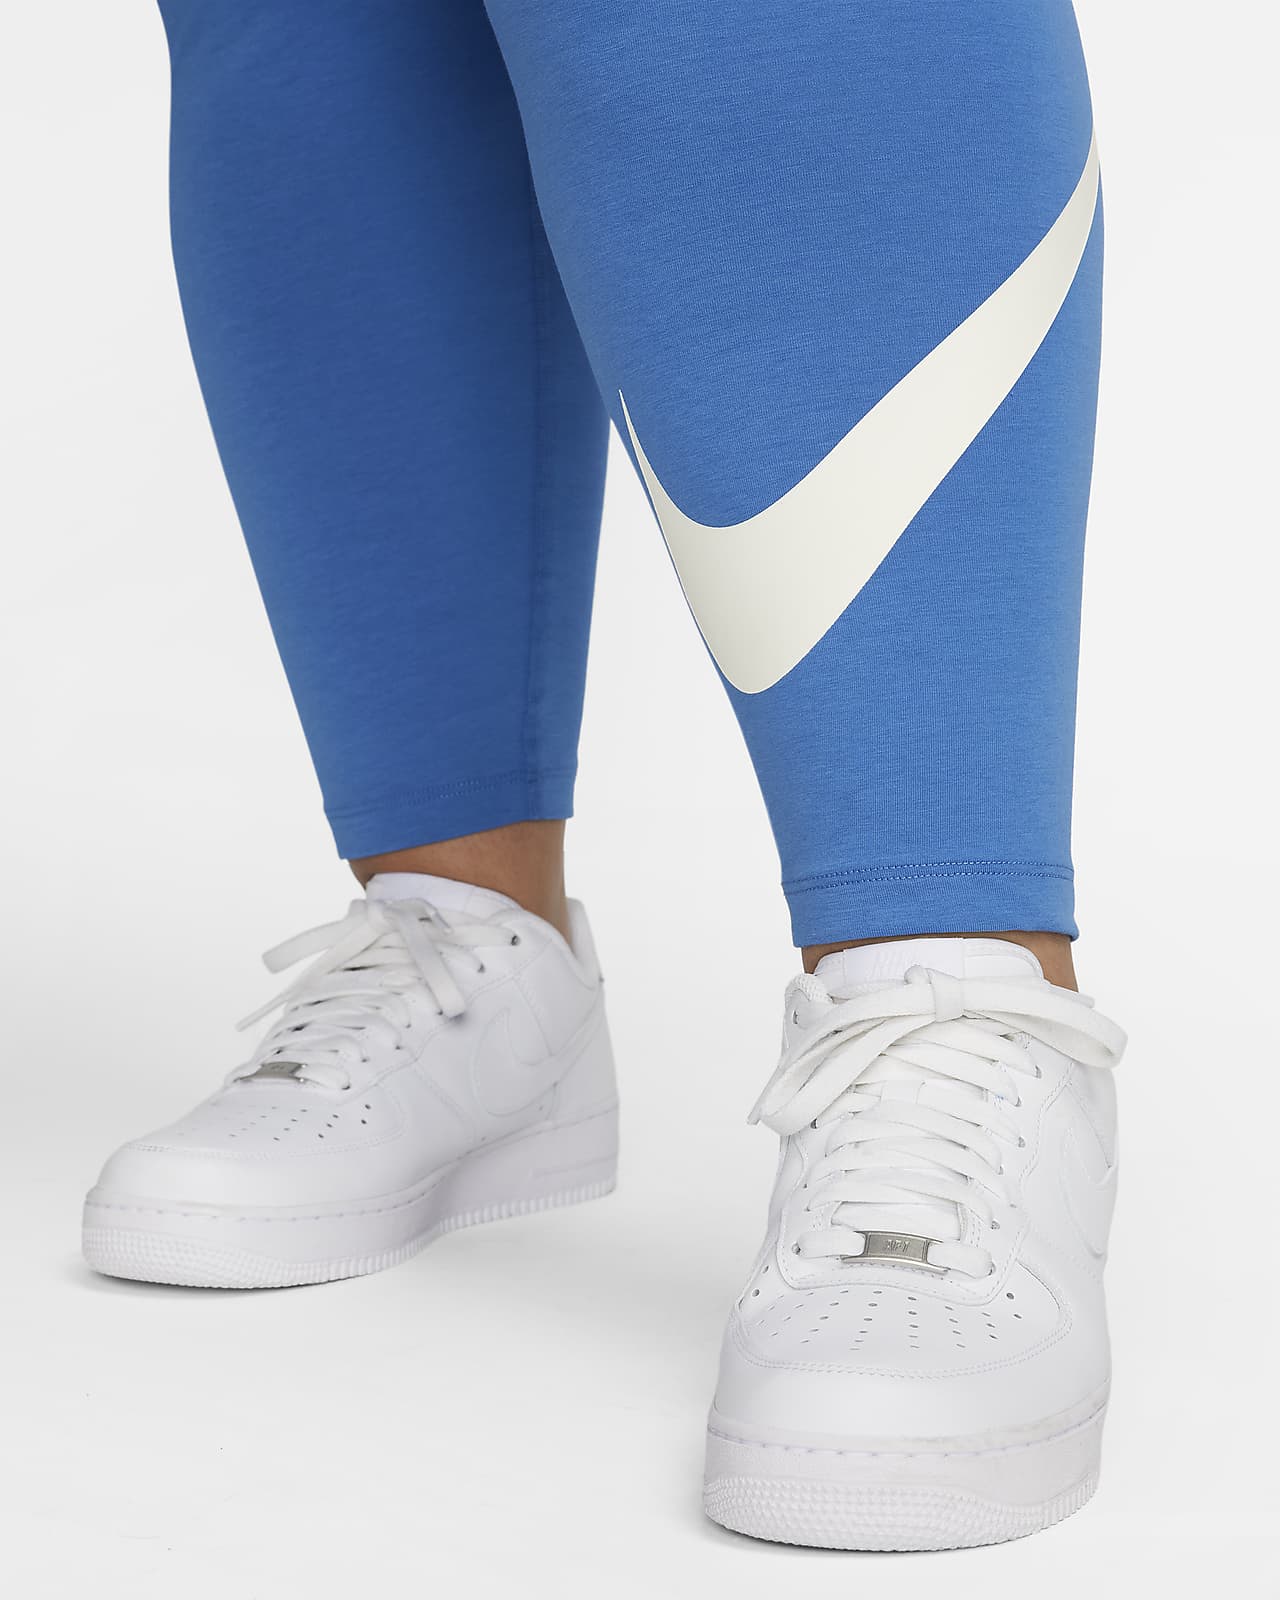 Nike+Women%27s+Black+White+Leg-a-see+JDI+High+Waist+Leggings+Size+